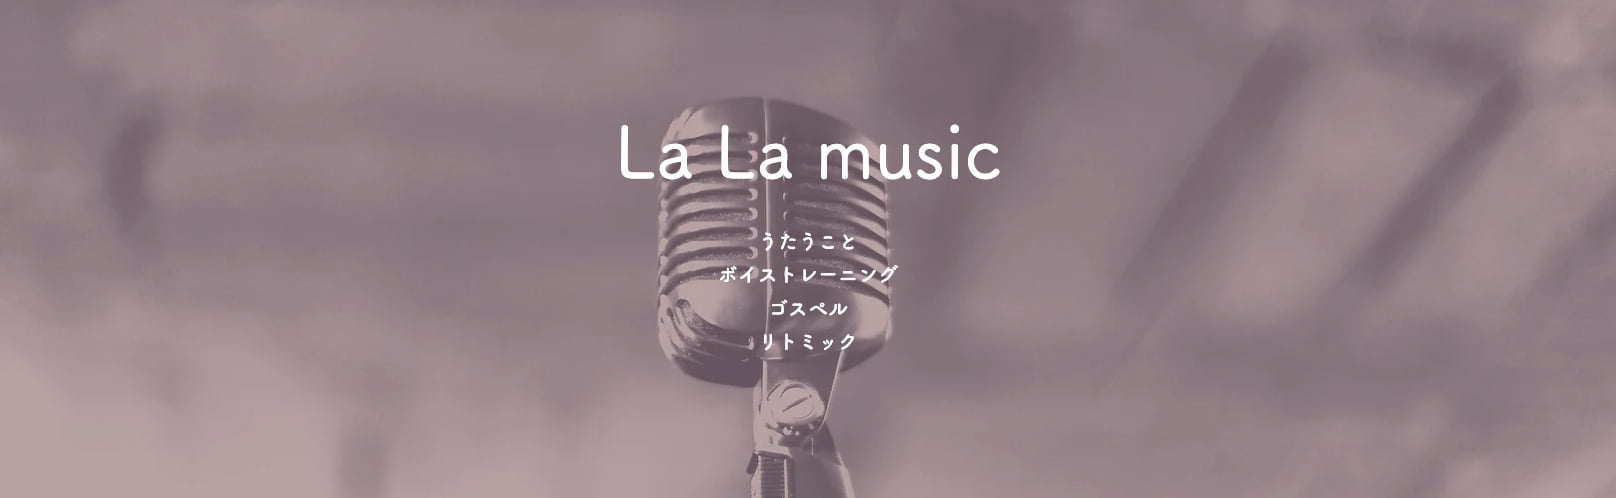 La La music